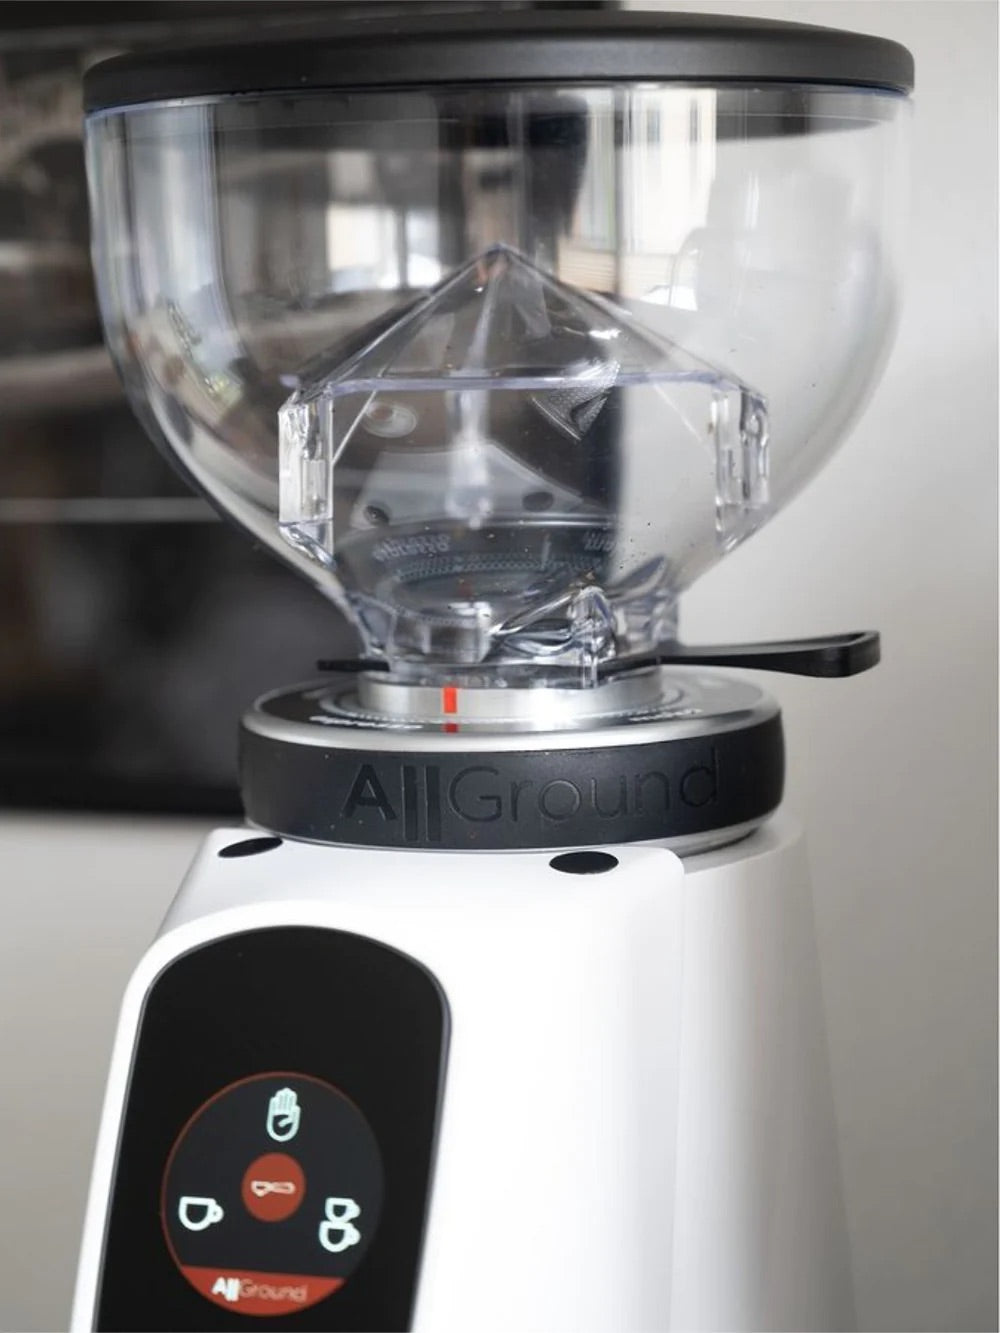 Fiorenzato - AllGround Coffee Grinder (120V)